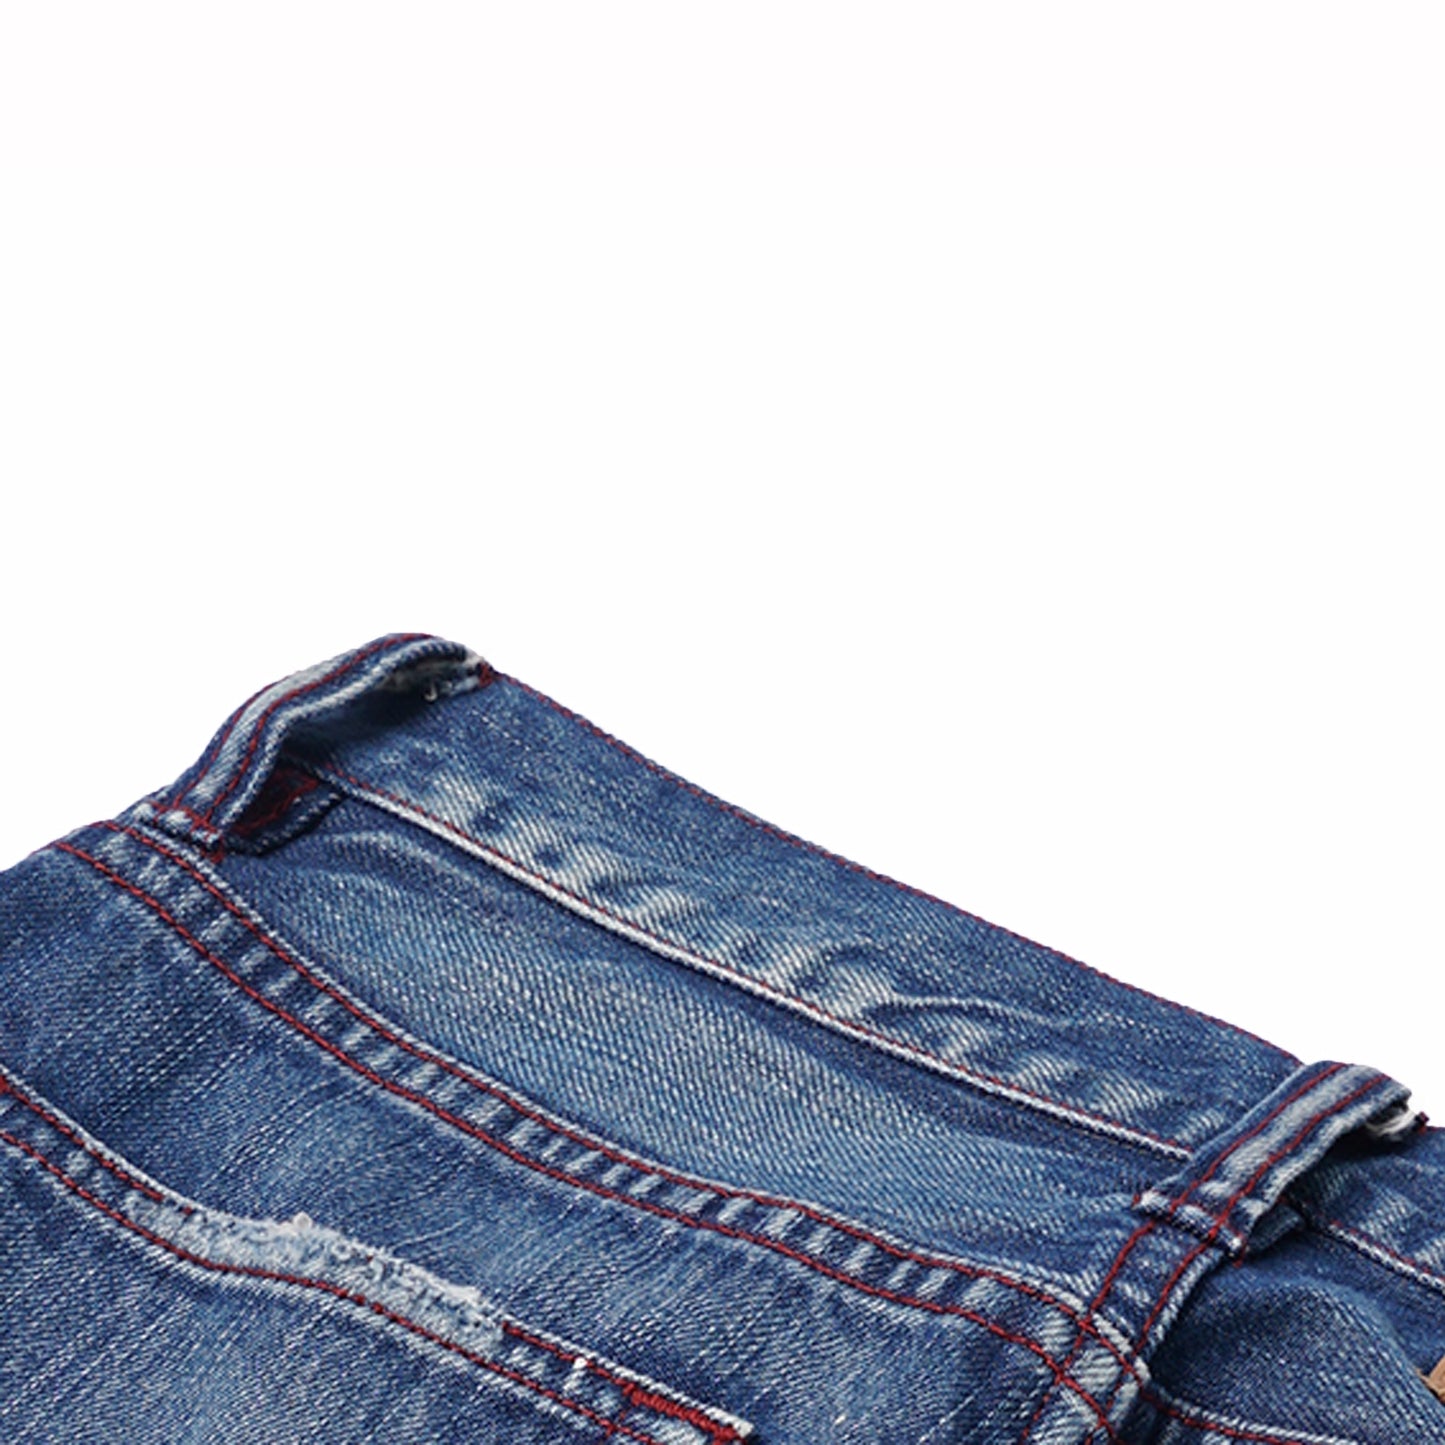 【訂製】No.29 Damaged Washed Slim Fit Jeans